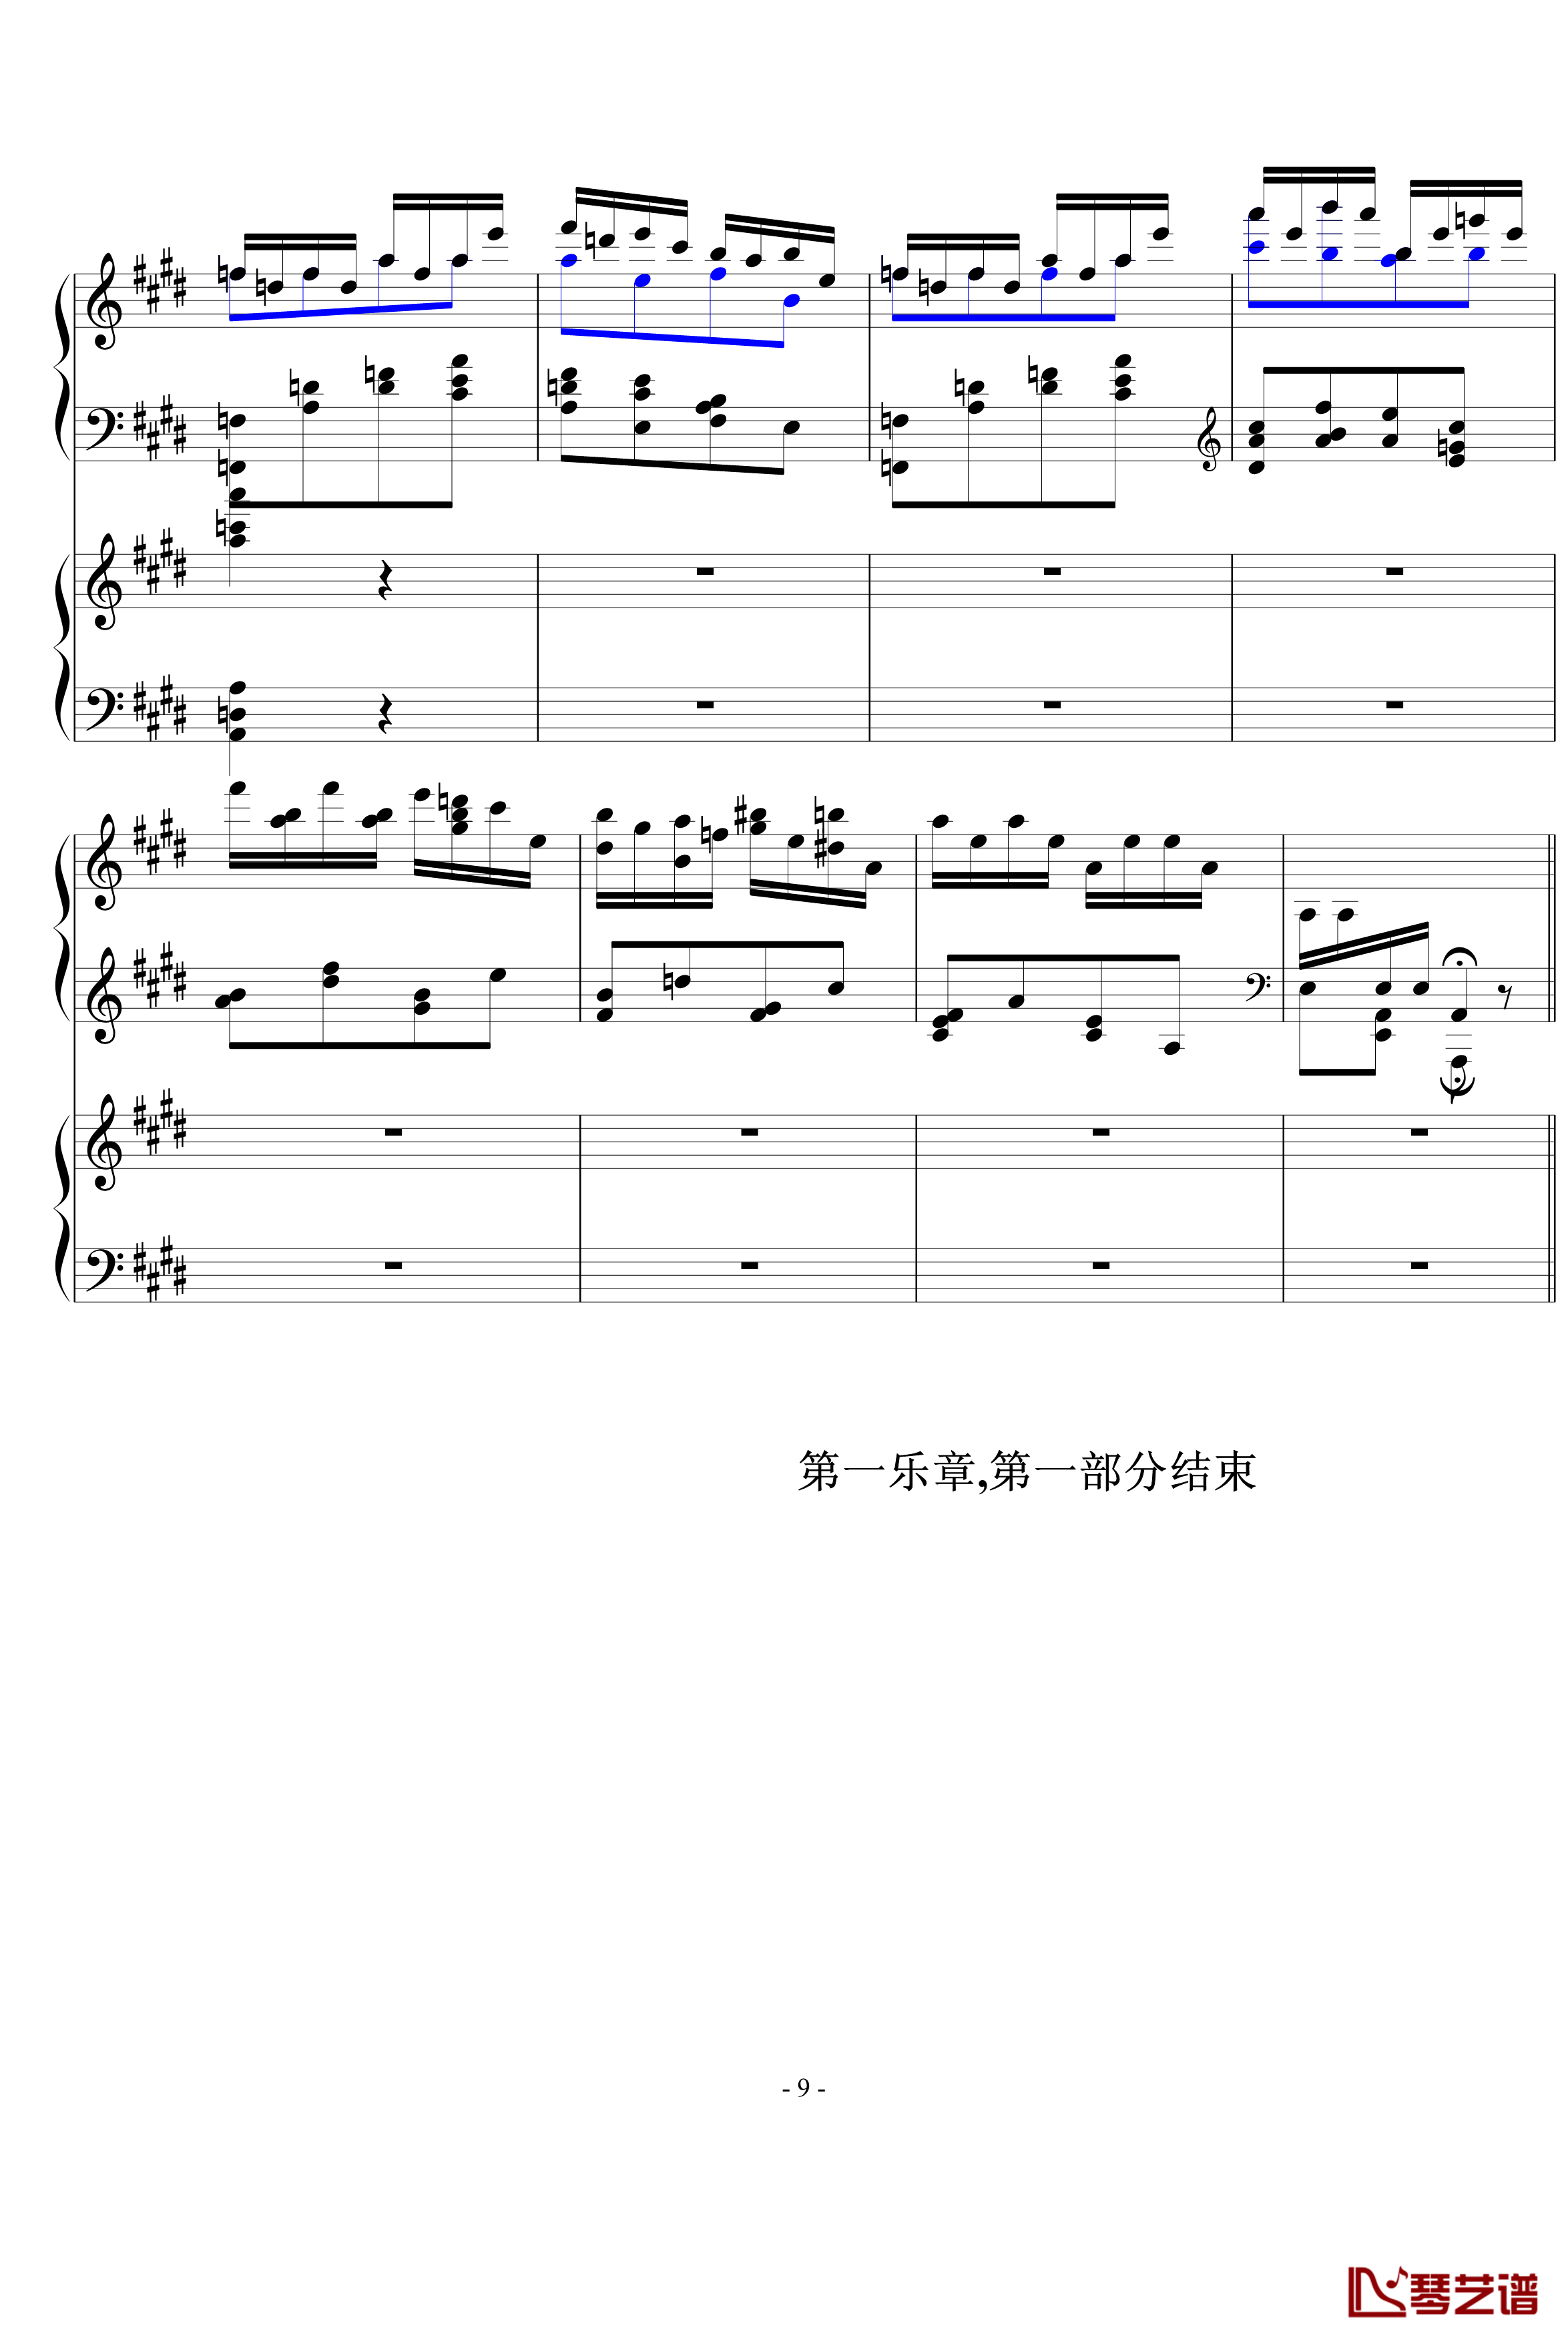 升c小调钢协钢琴谱-一乐章,前部分-希明9